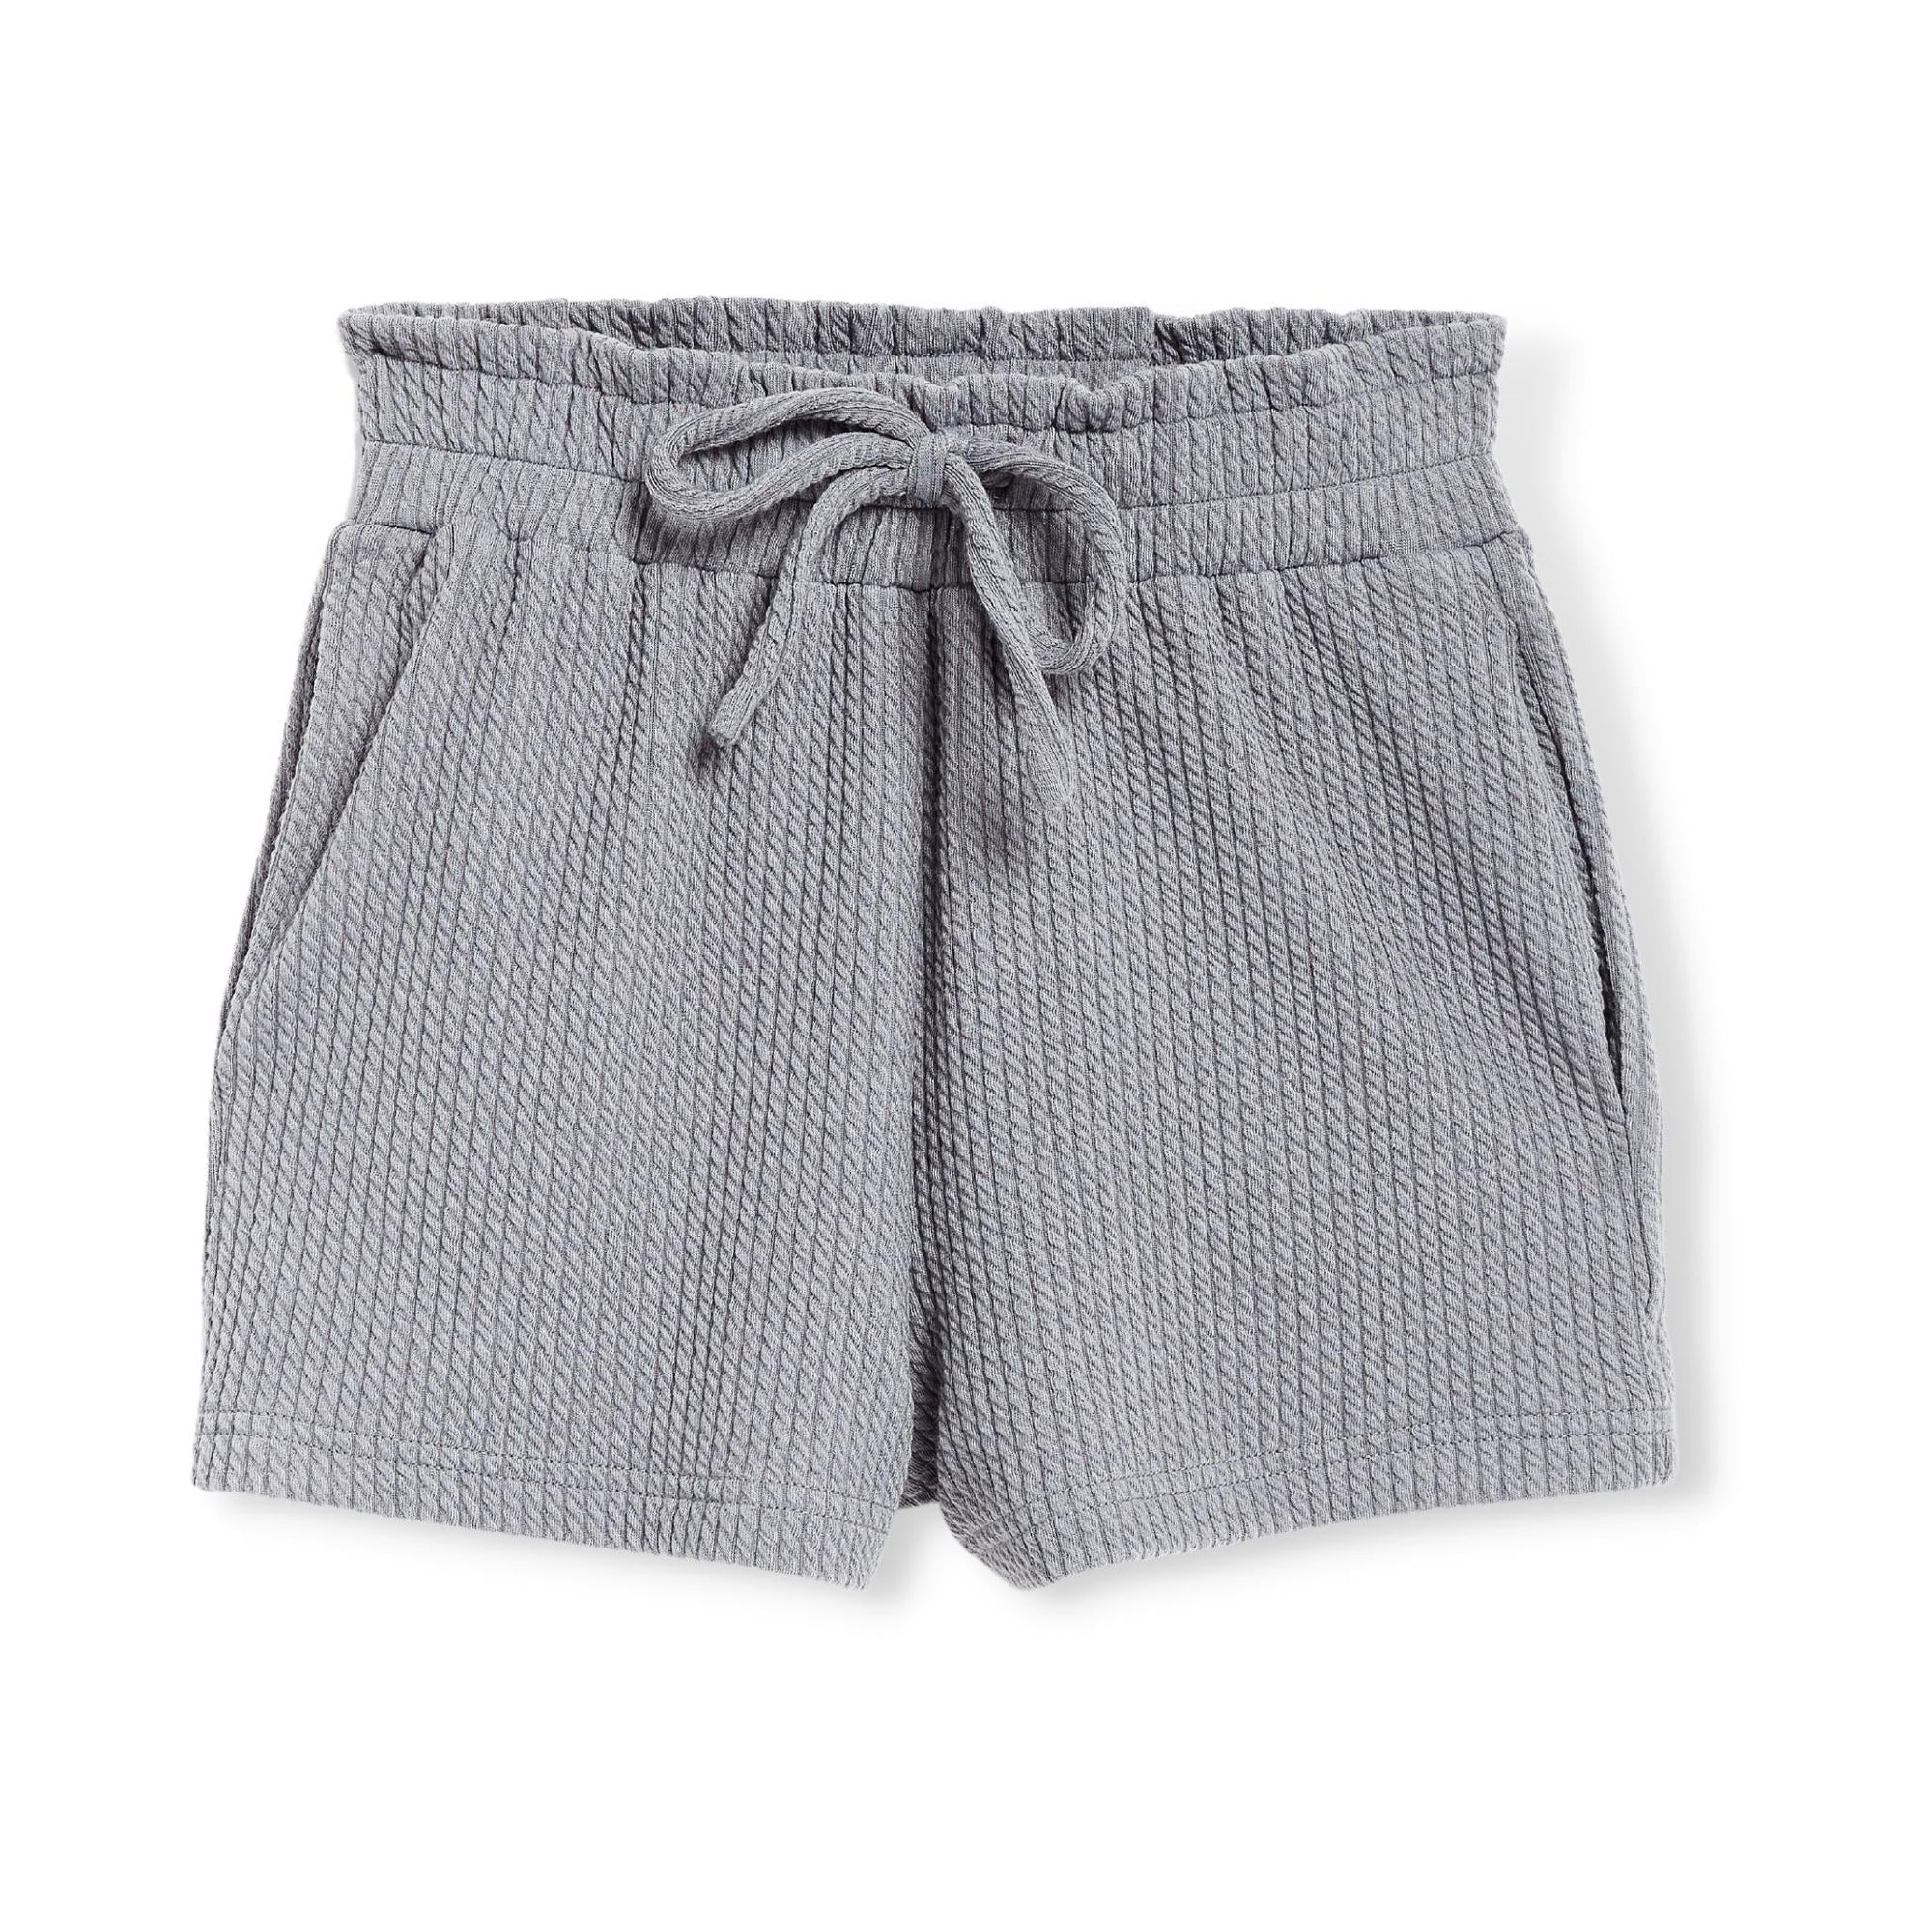 Tractr Grey Knit Shorts - a Spirit Animal - shorts $30-$60 10 12